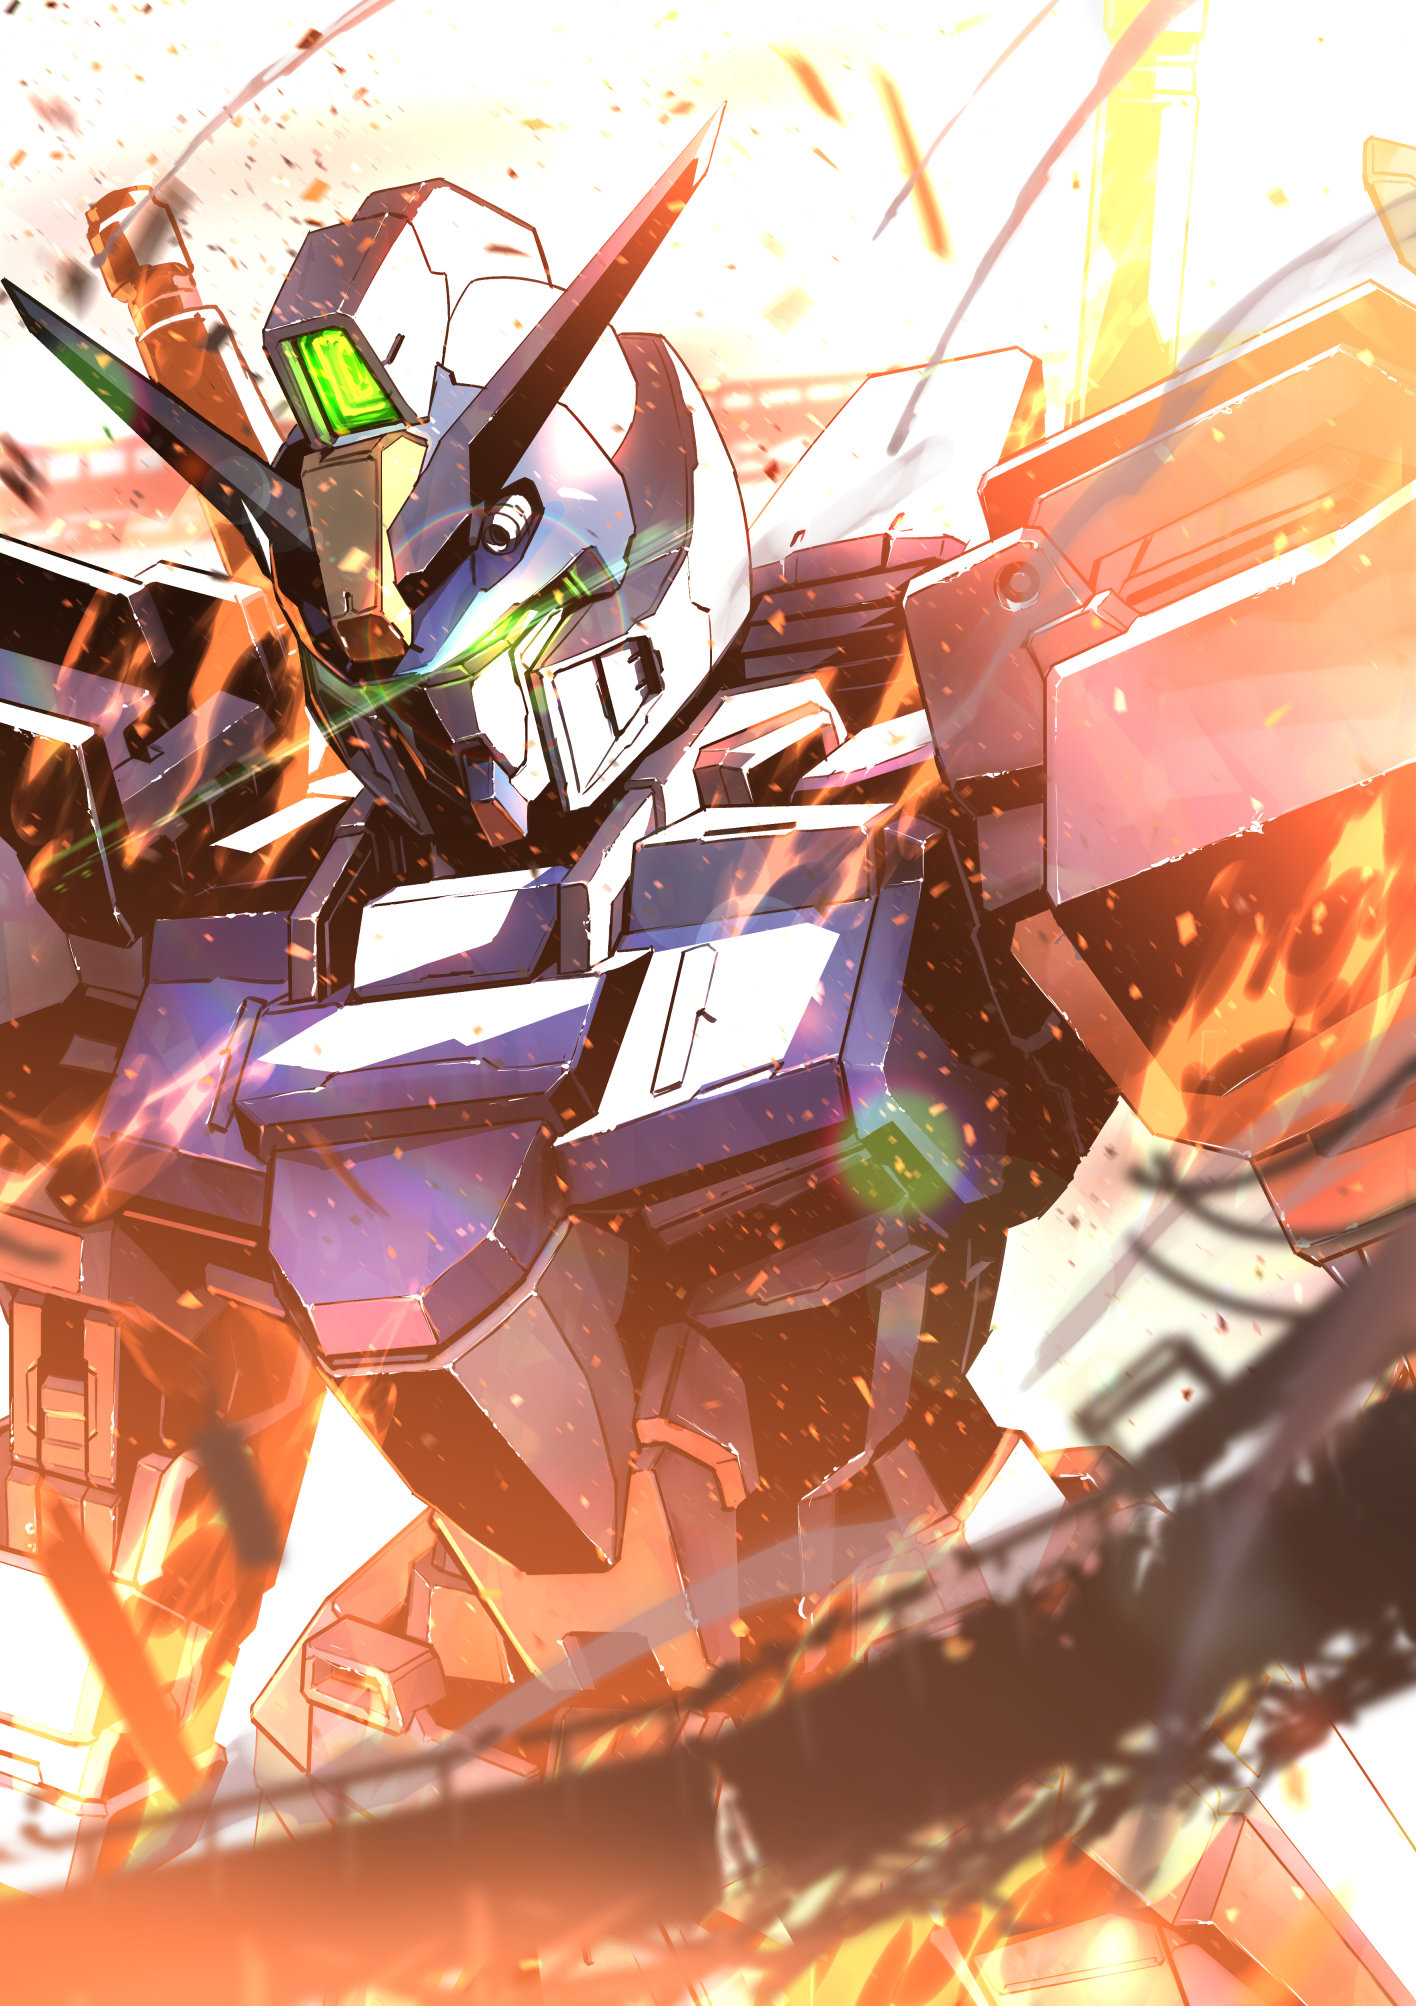 Duel Gundam Gundam Mobile Suit Gundam SEED Anime Mechs Super Robot Taisen Artwork Digital Art Fan Ar 1417x2006